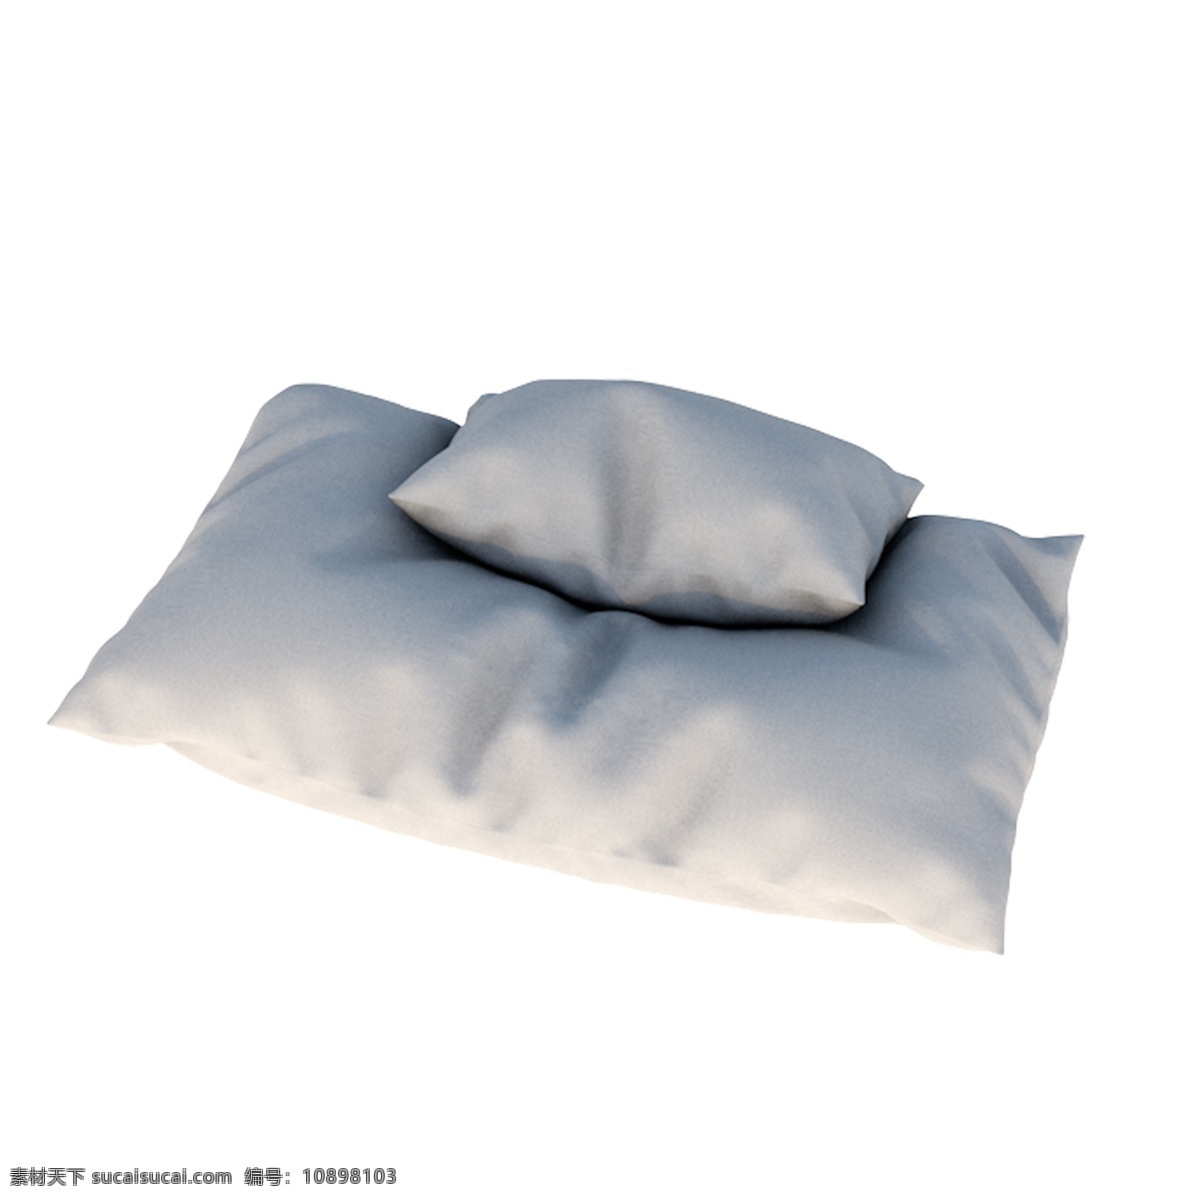 c4d 立体 白色 枕头 商用 白色枕头 枕头实物 立体枕头